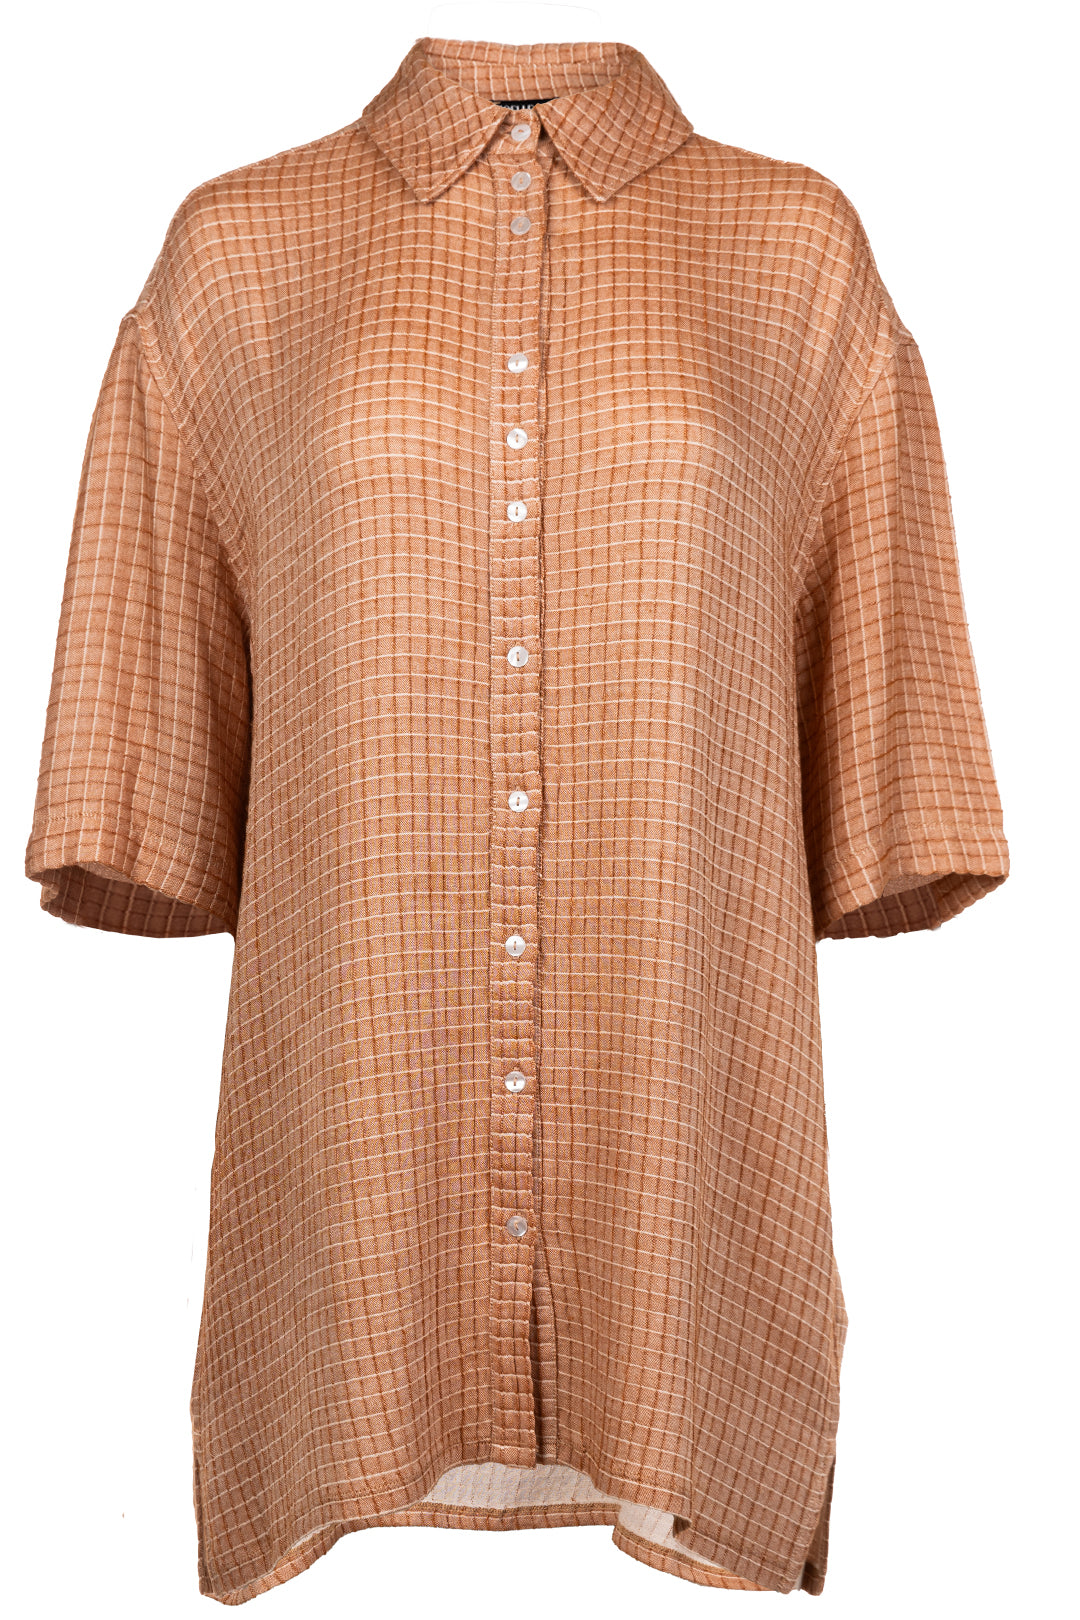 Chemise orange gaufrée à manches courtes | Moxan JOELLE Collection